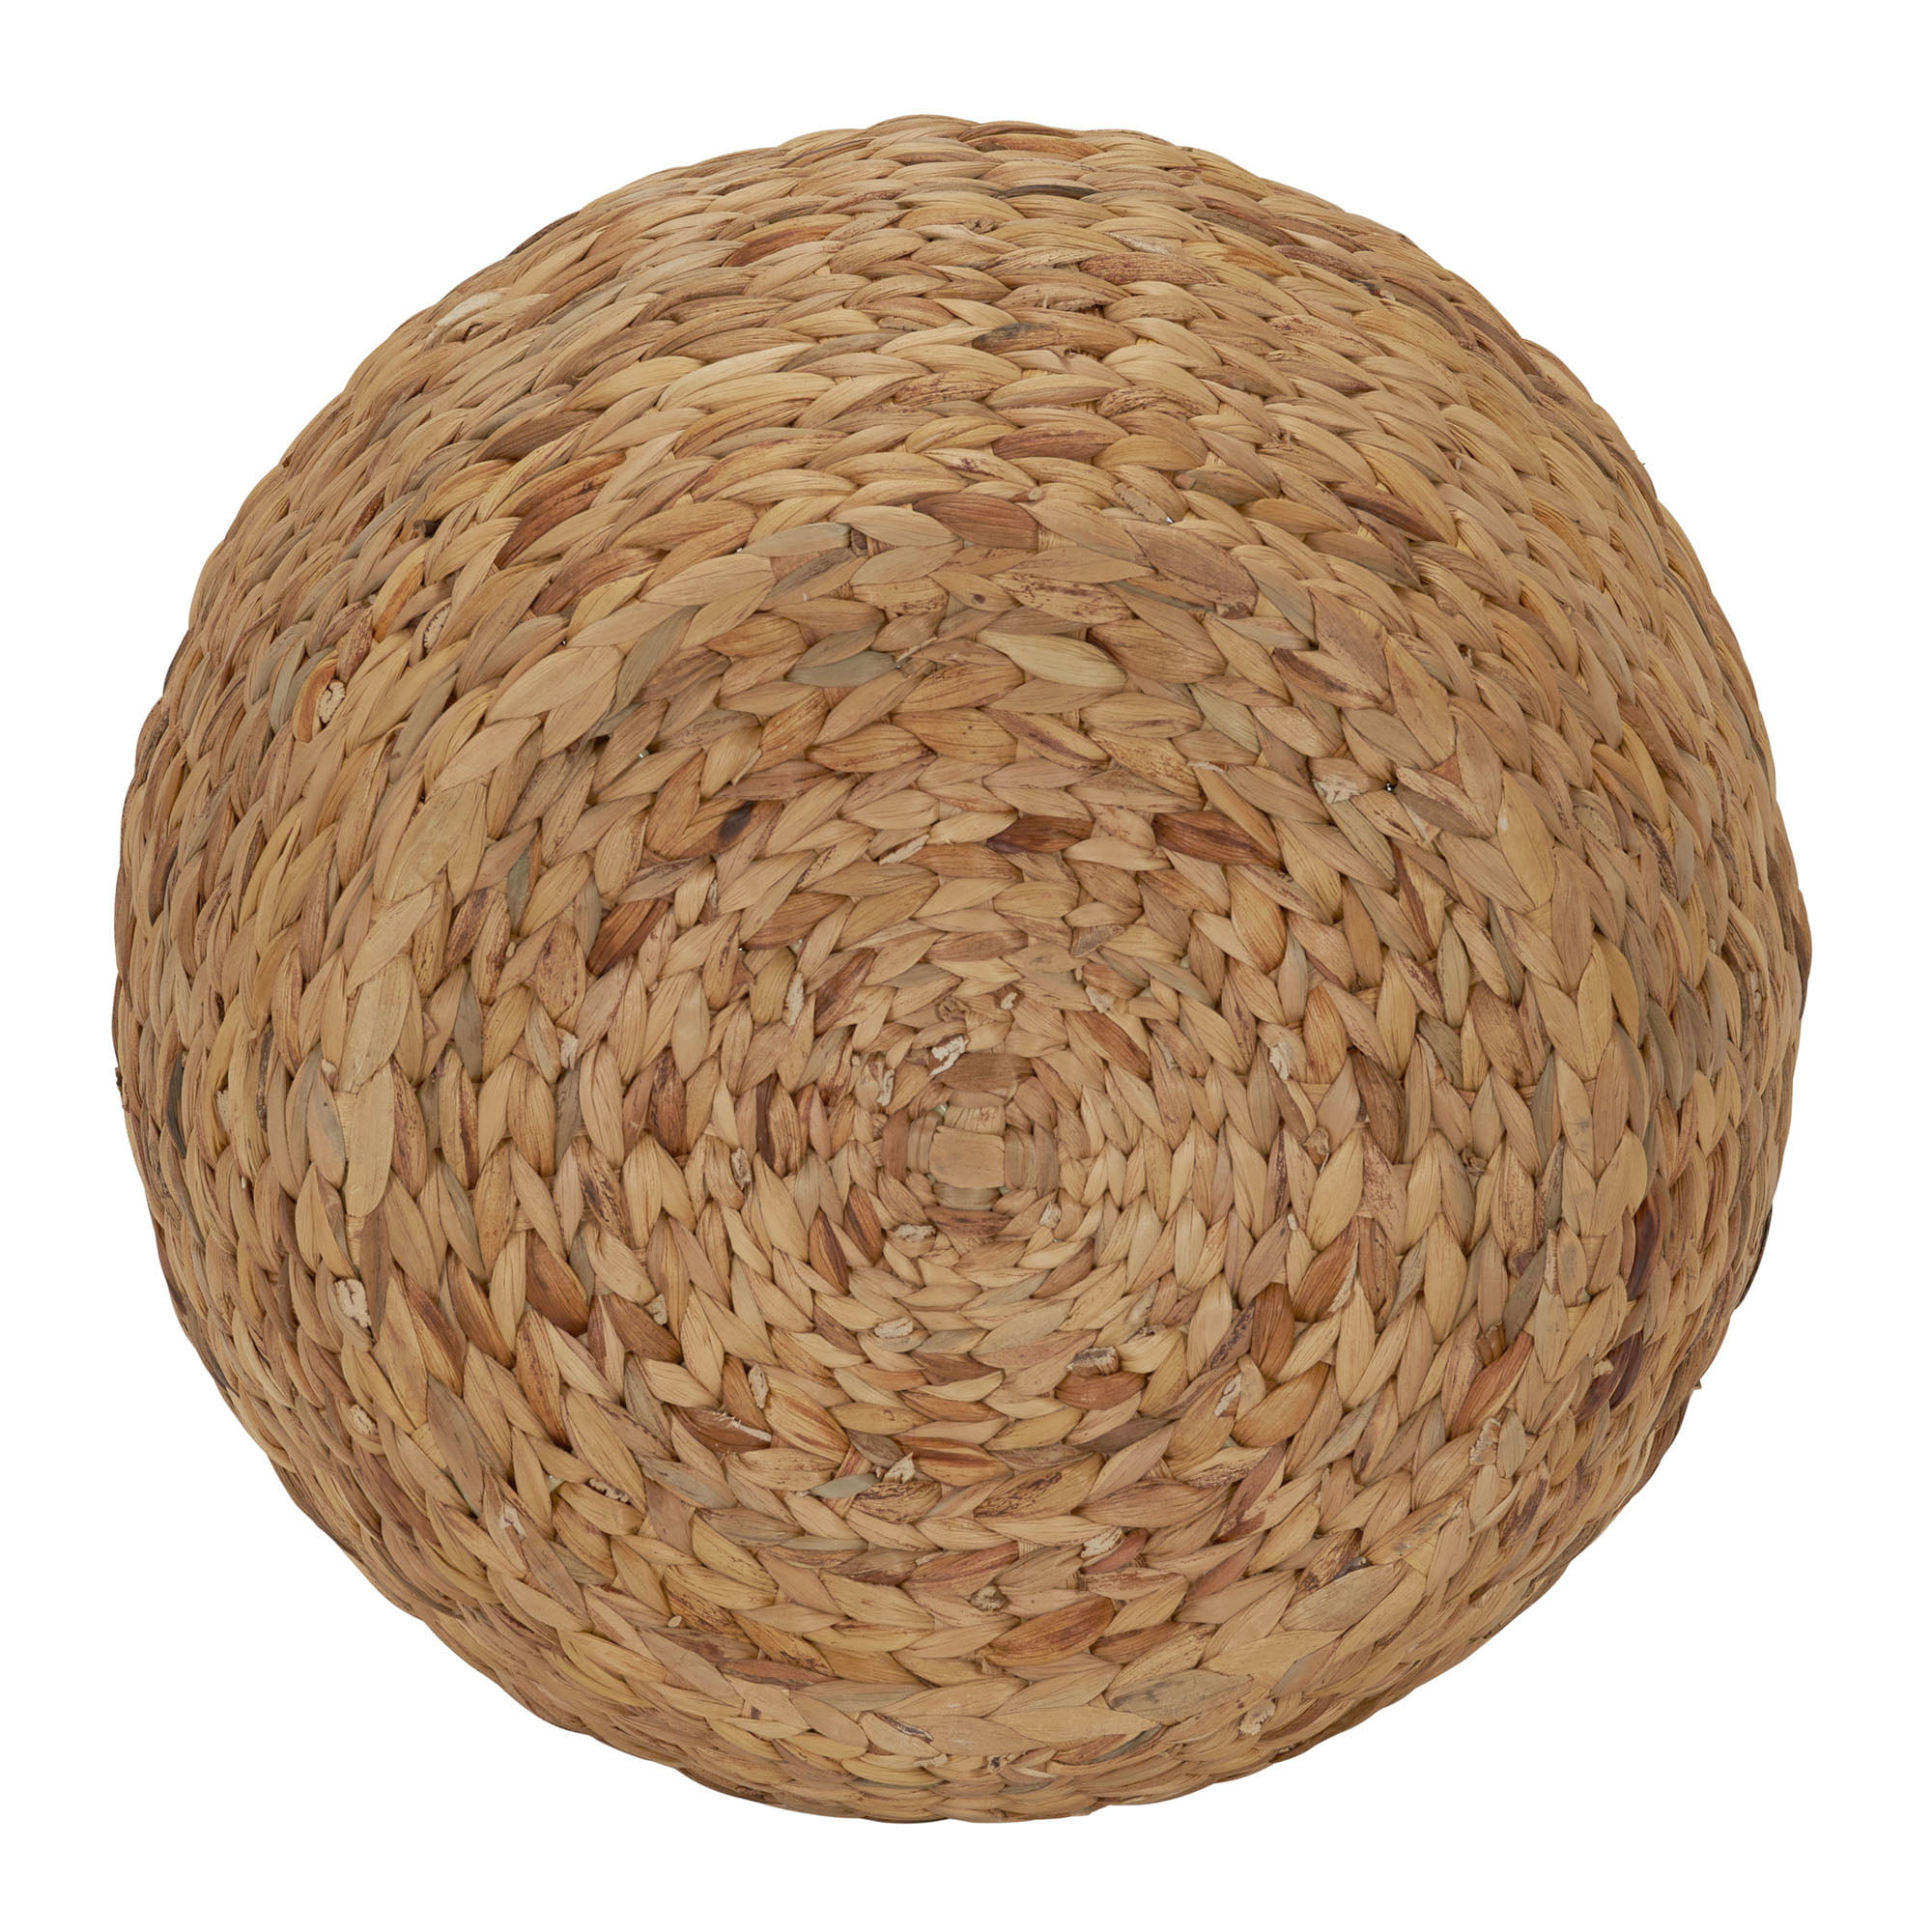 Hyacinth Wicker Storage Basket With Lid, Round Lidded Storage Basket